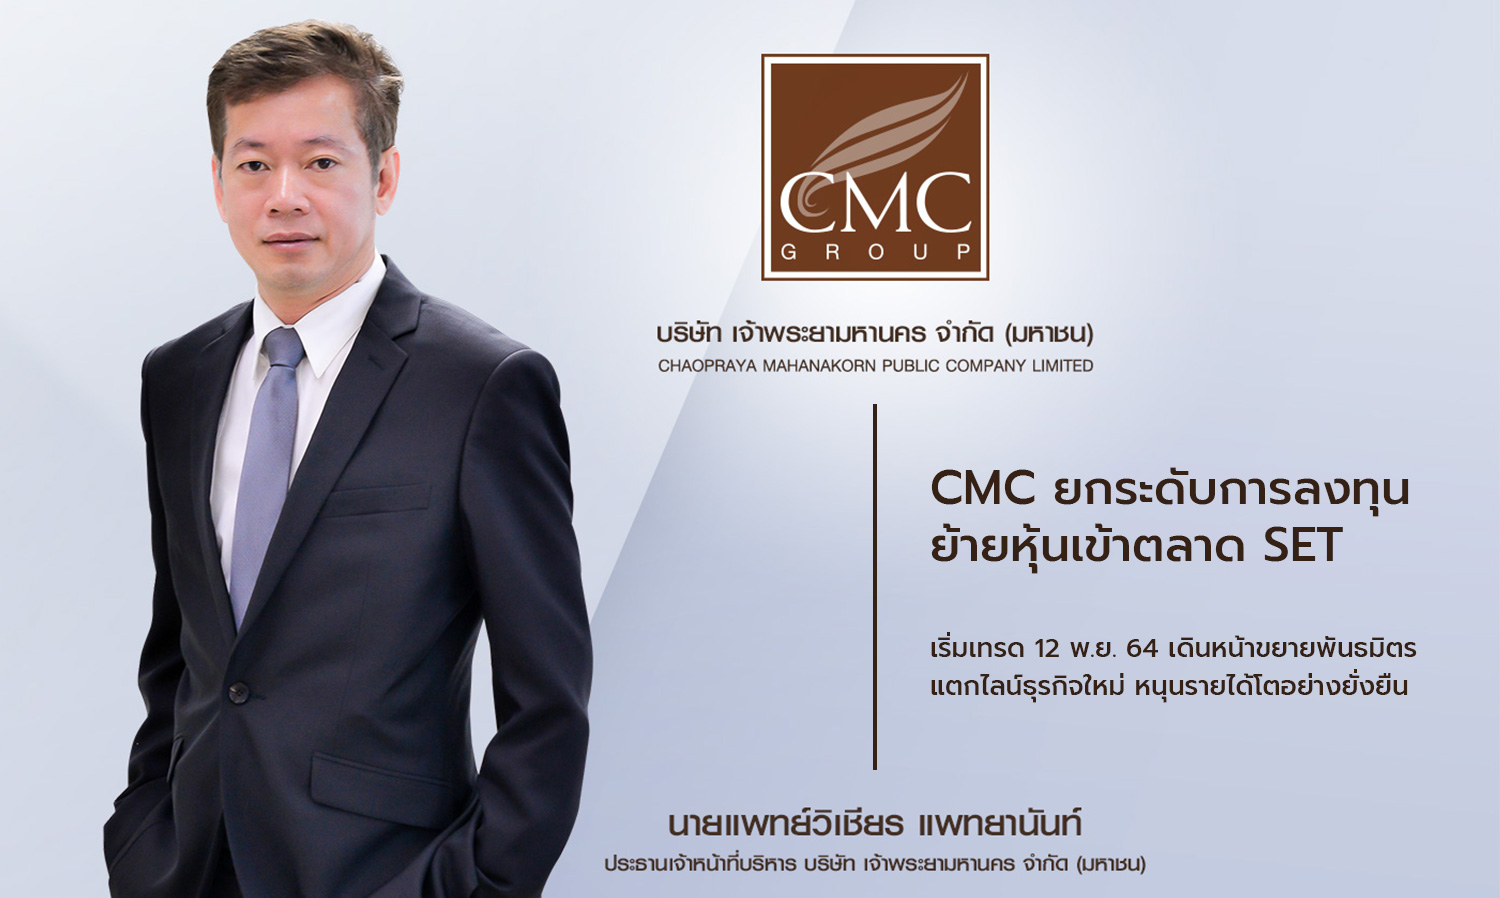 CMC ยกระดับการลงทุน ย้ายหุ้นเข้าตลาด SET เริ่มเทรด 12 พ.ย. 64 เดินหน้าขยายพันธมิตร แตกไลน์ธุรกิจใหม่ หนุนรายได้โตอย่างยั่งยืน